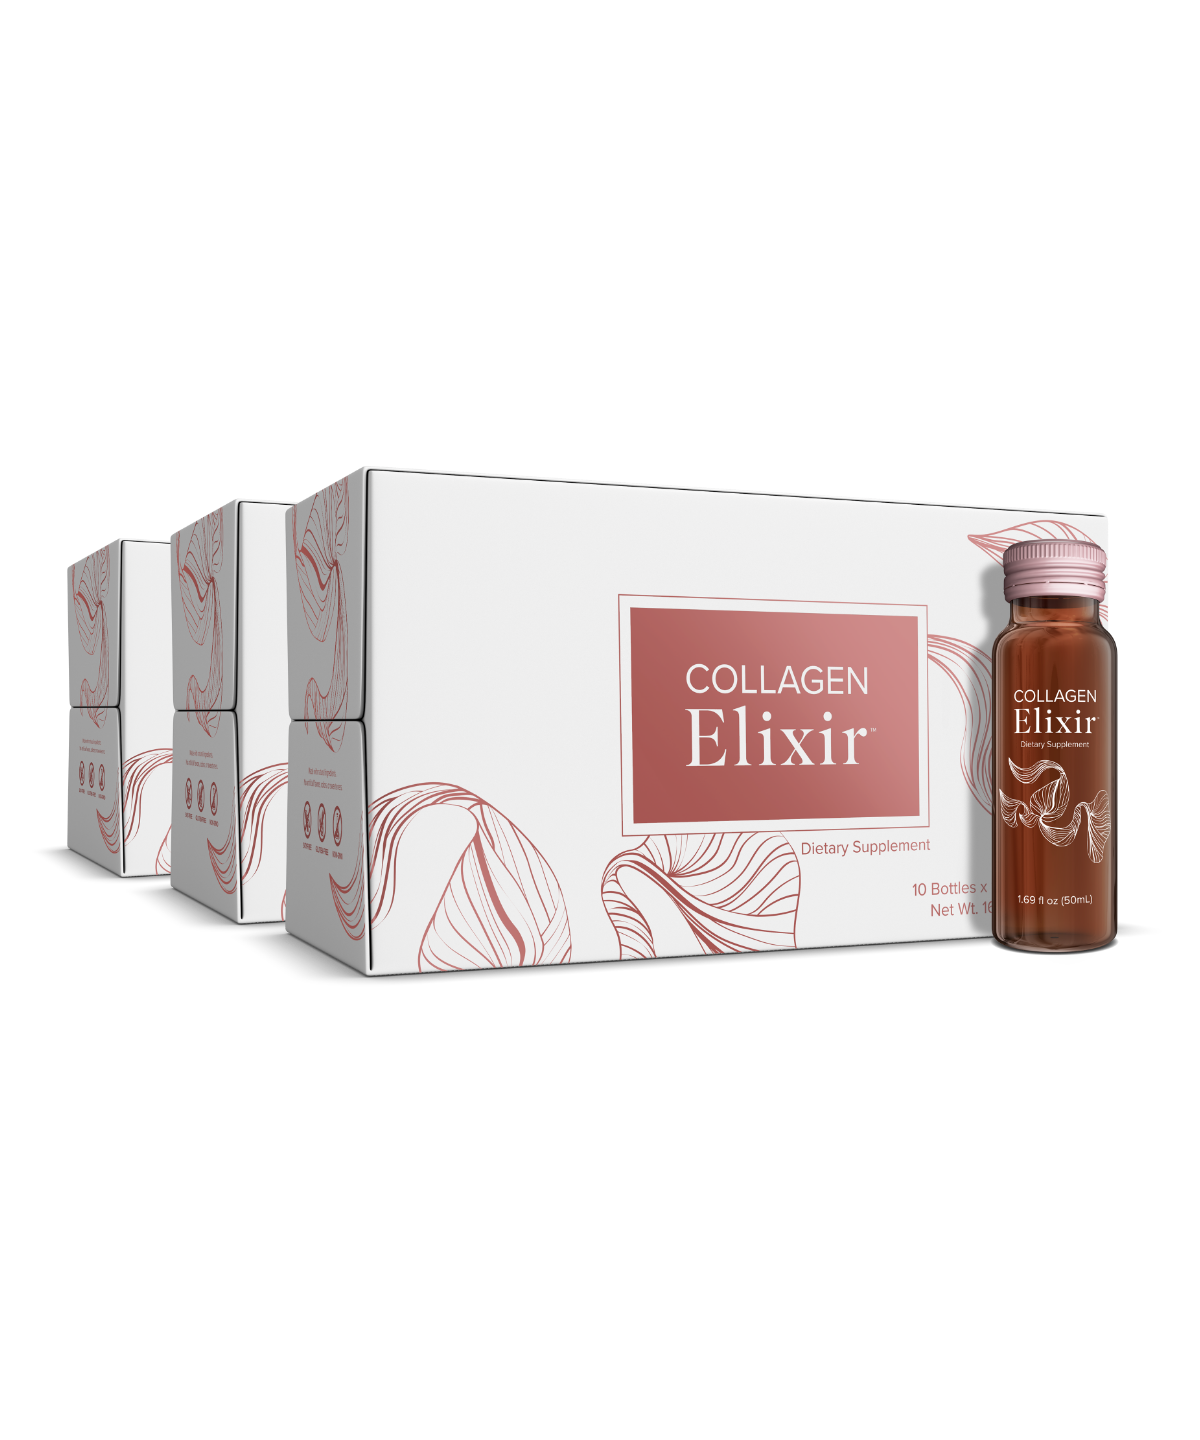 Collageen Elixir 3 verpakkingen met 30 flesjes van elk 50ml voor 1 maand